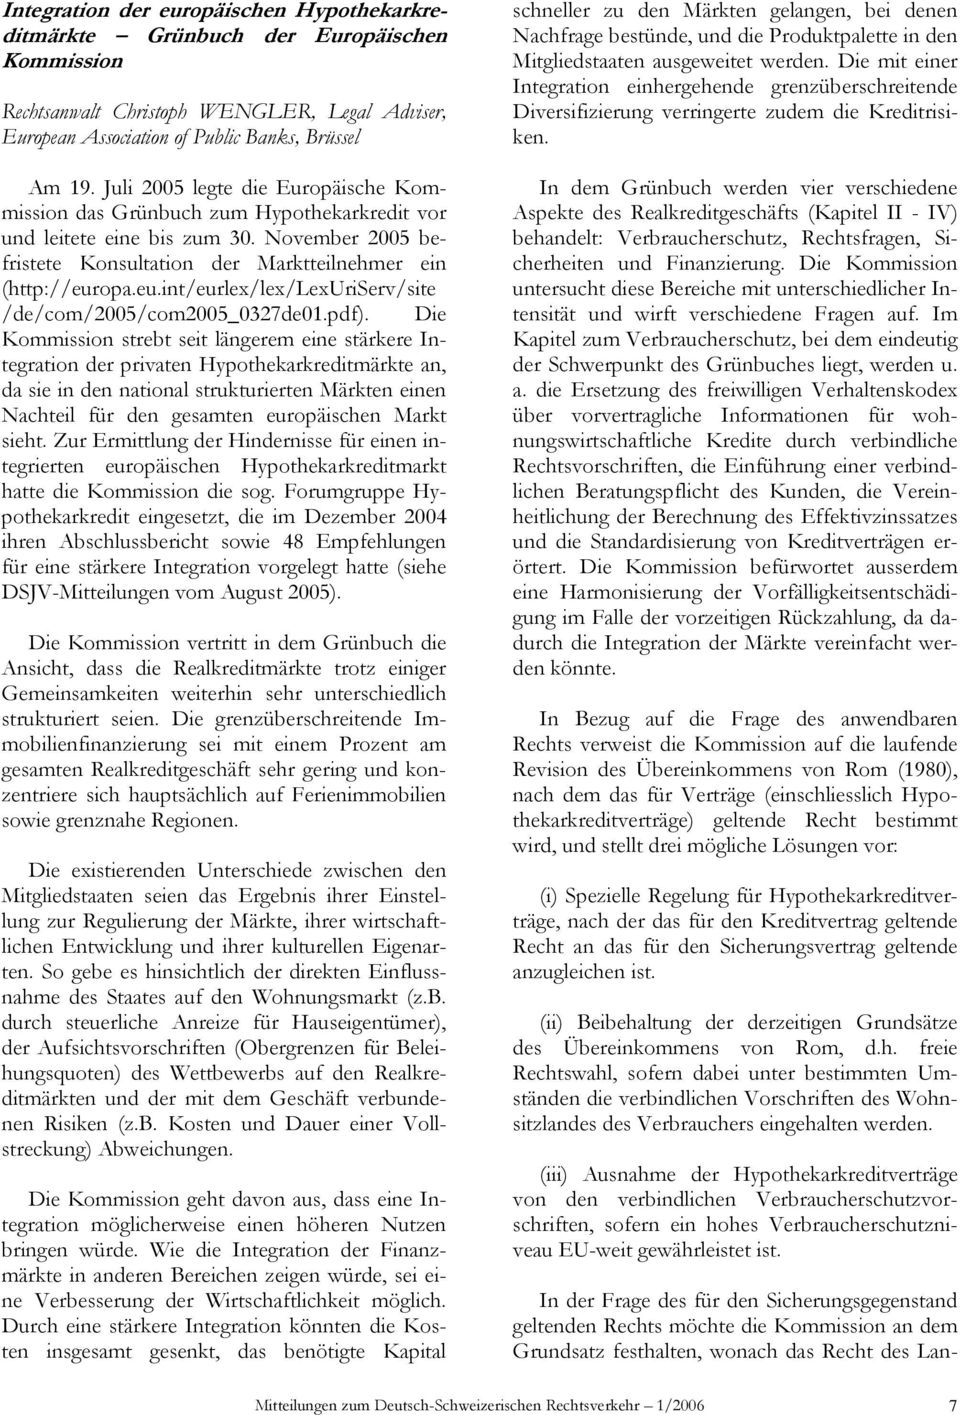 opa.eu.int/eurlex/lex/lexuriserv/site /de/com/2005/com2005_0327de01.pdf).